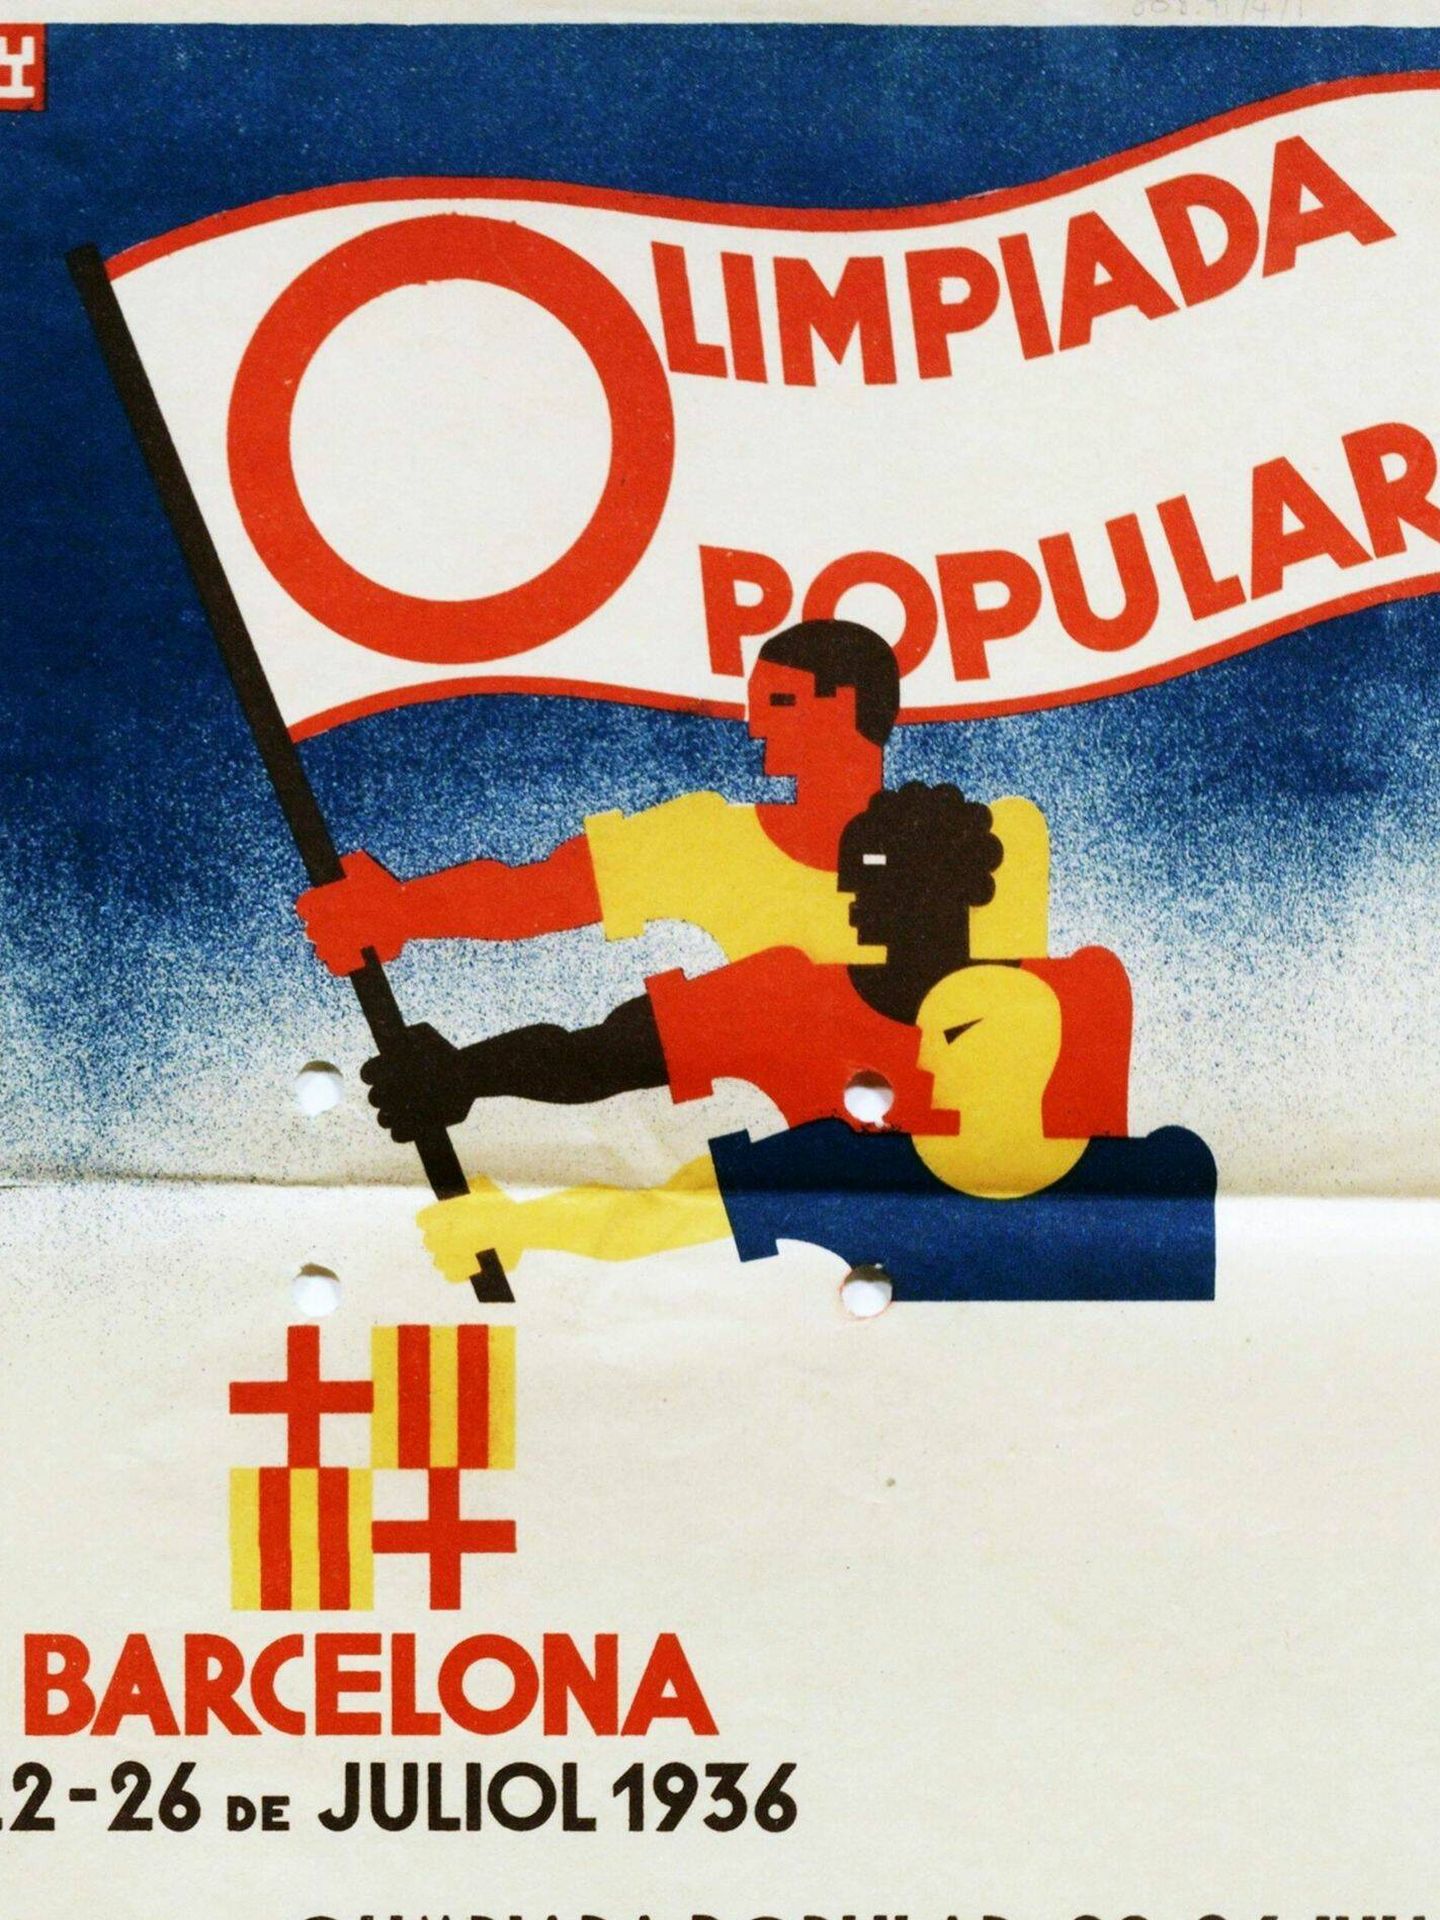 Cartel de la Olimpiada Popular de Barcelona en 1936